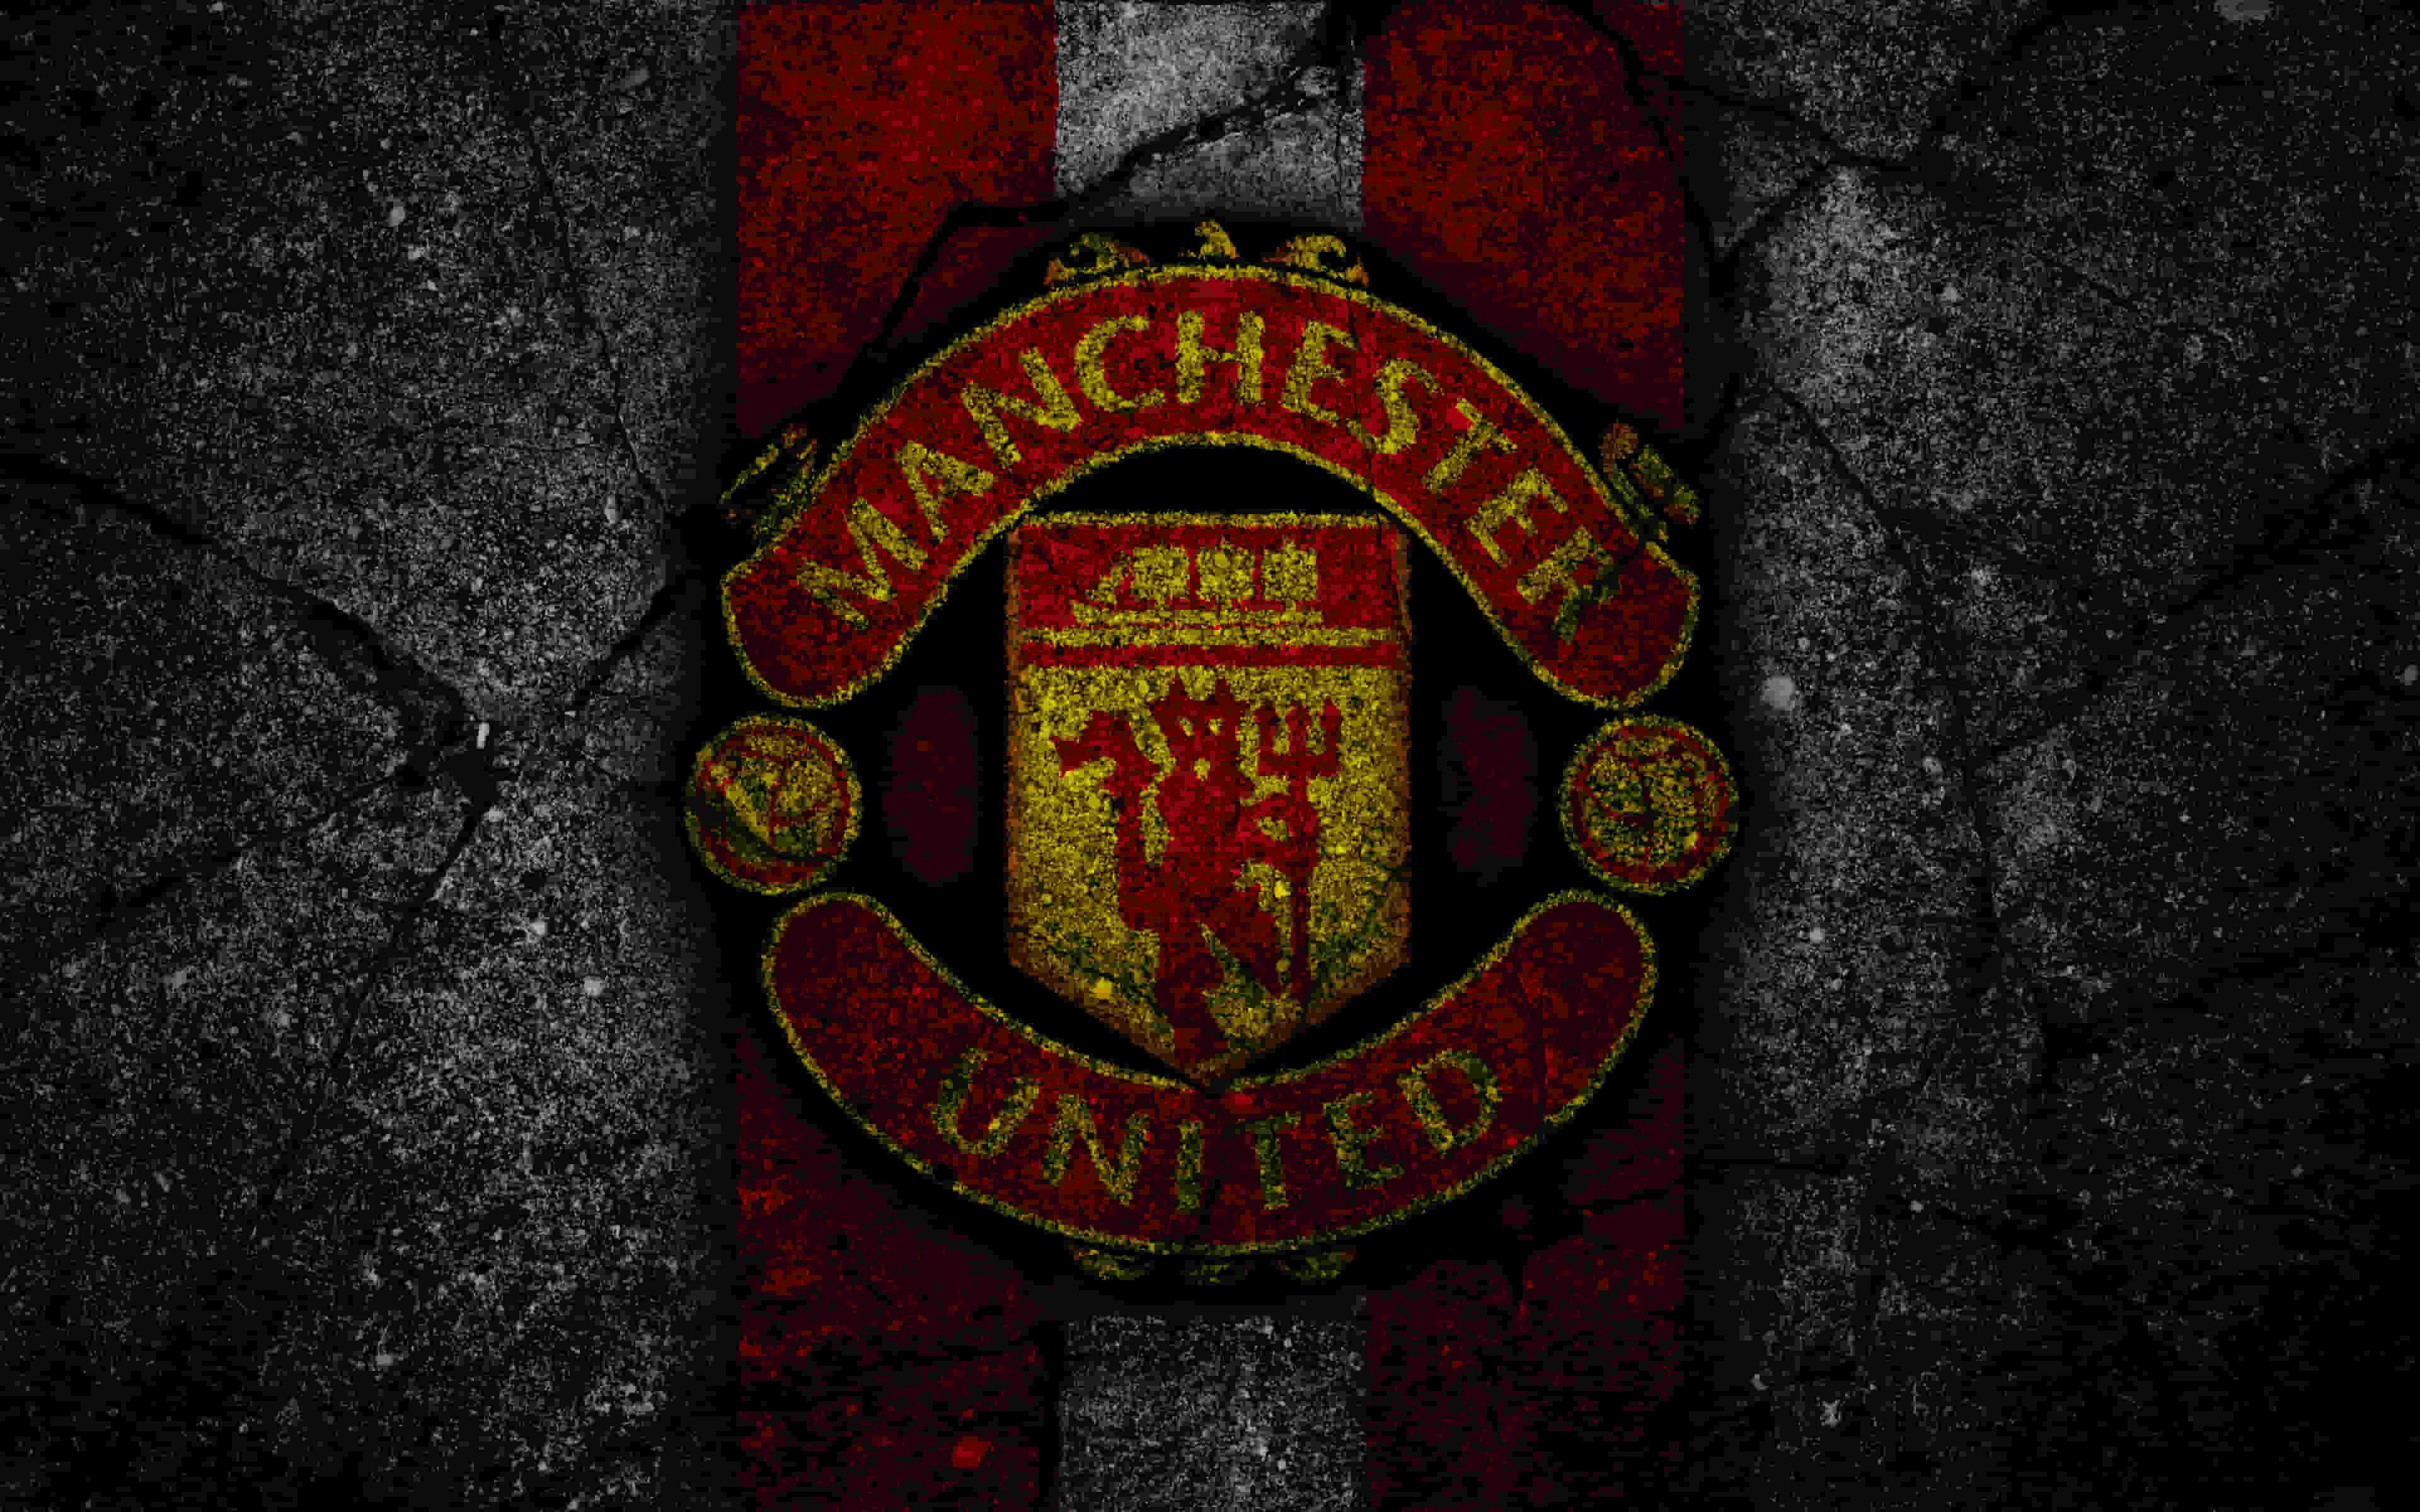 Manchester United iPhone Wallpapers  Top Những Hình Ảnh Đẹp